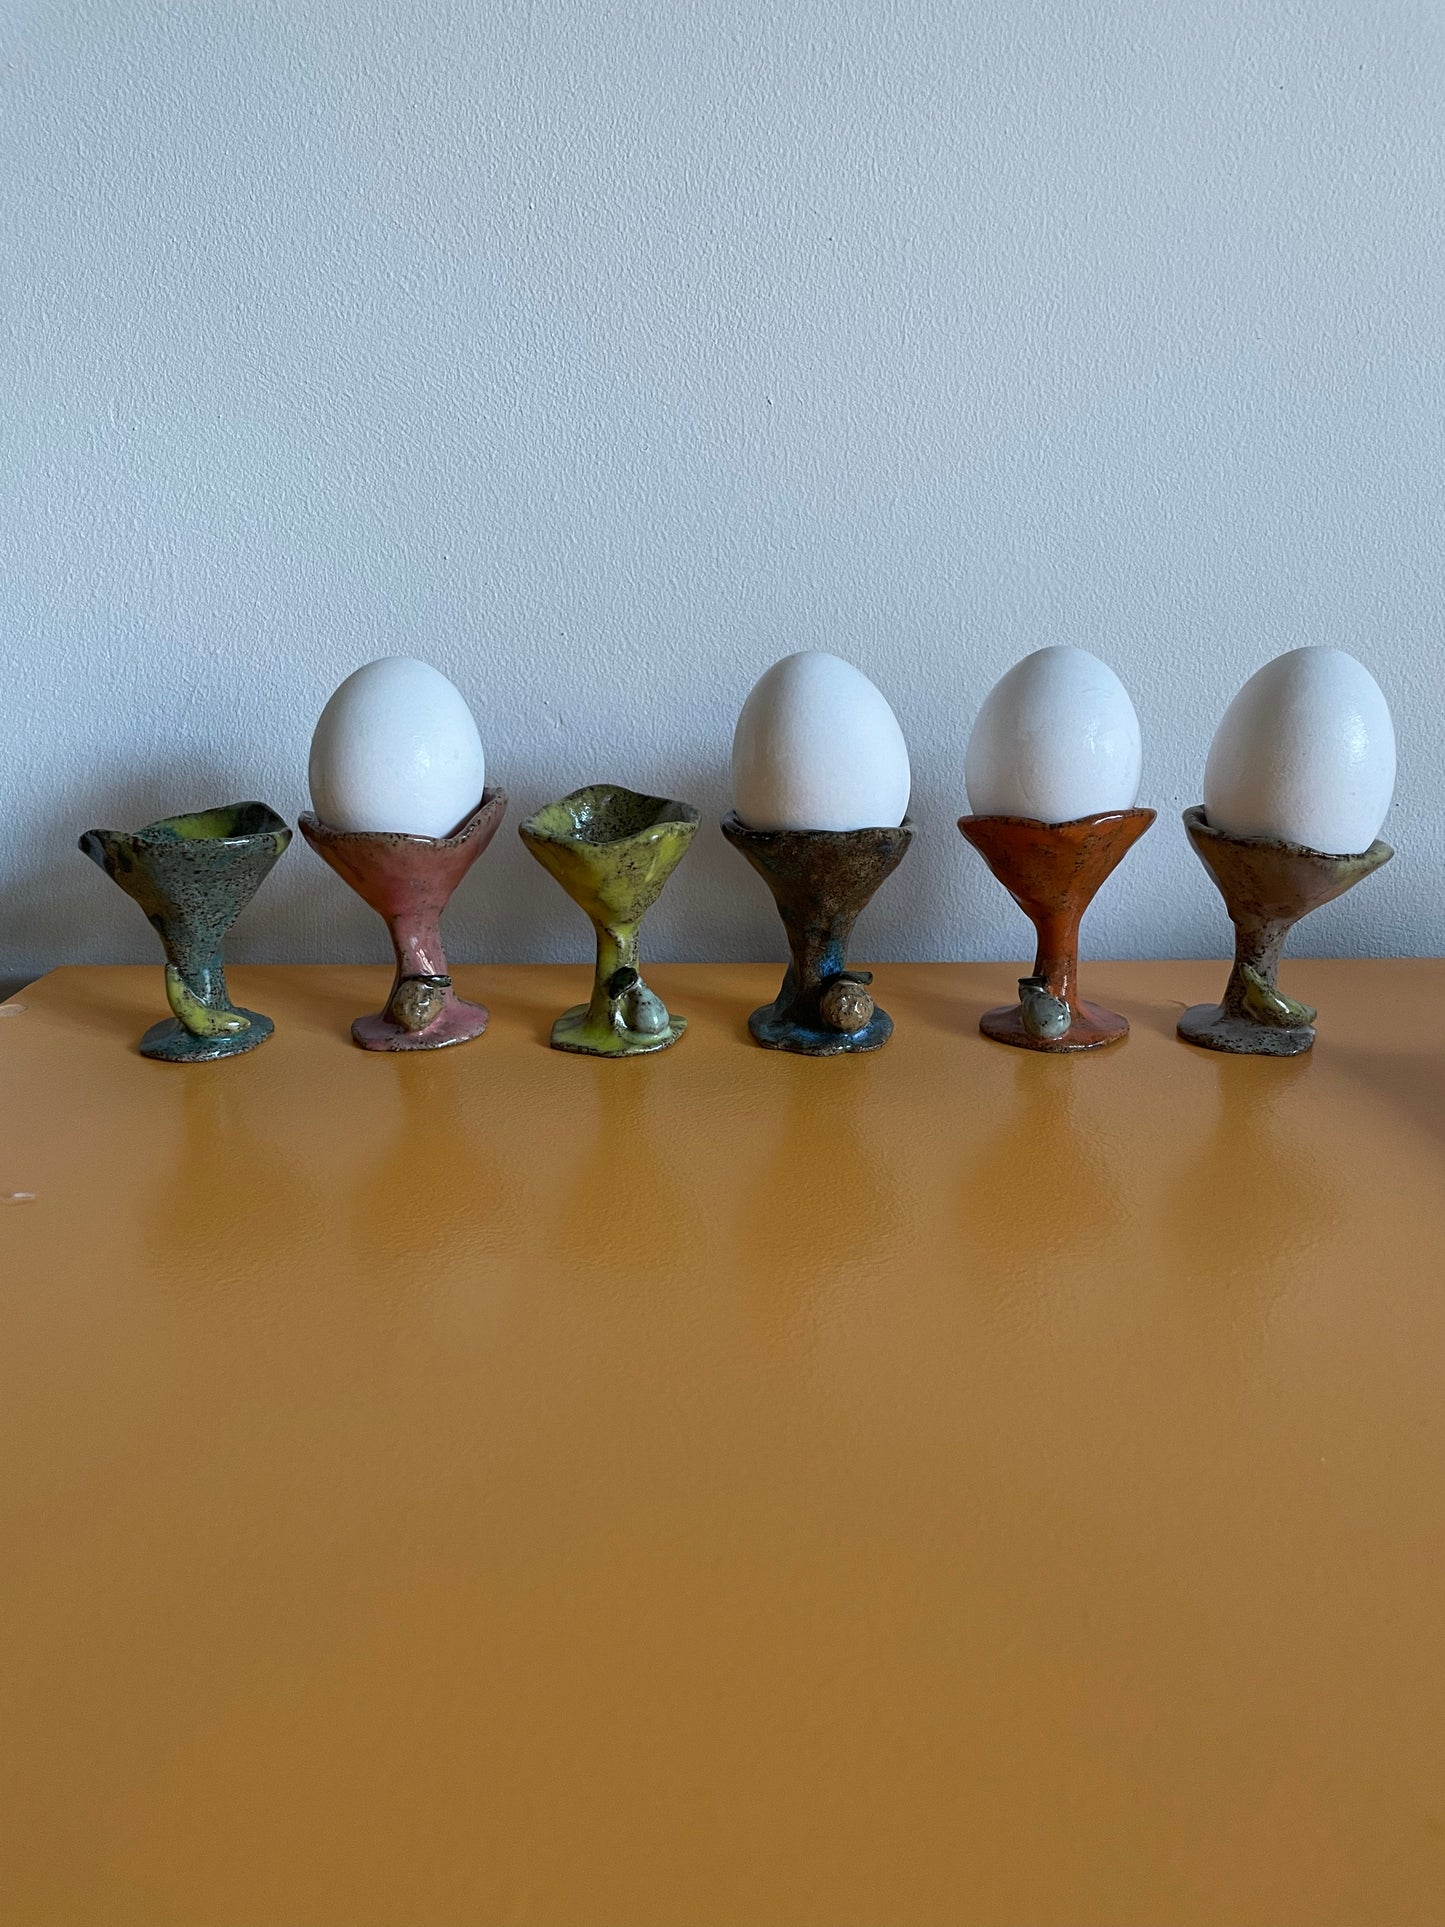 Farveladekeramik - 6 æggebægre med frugter